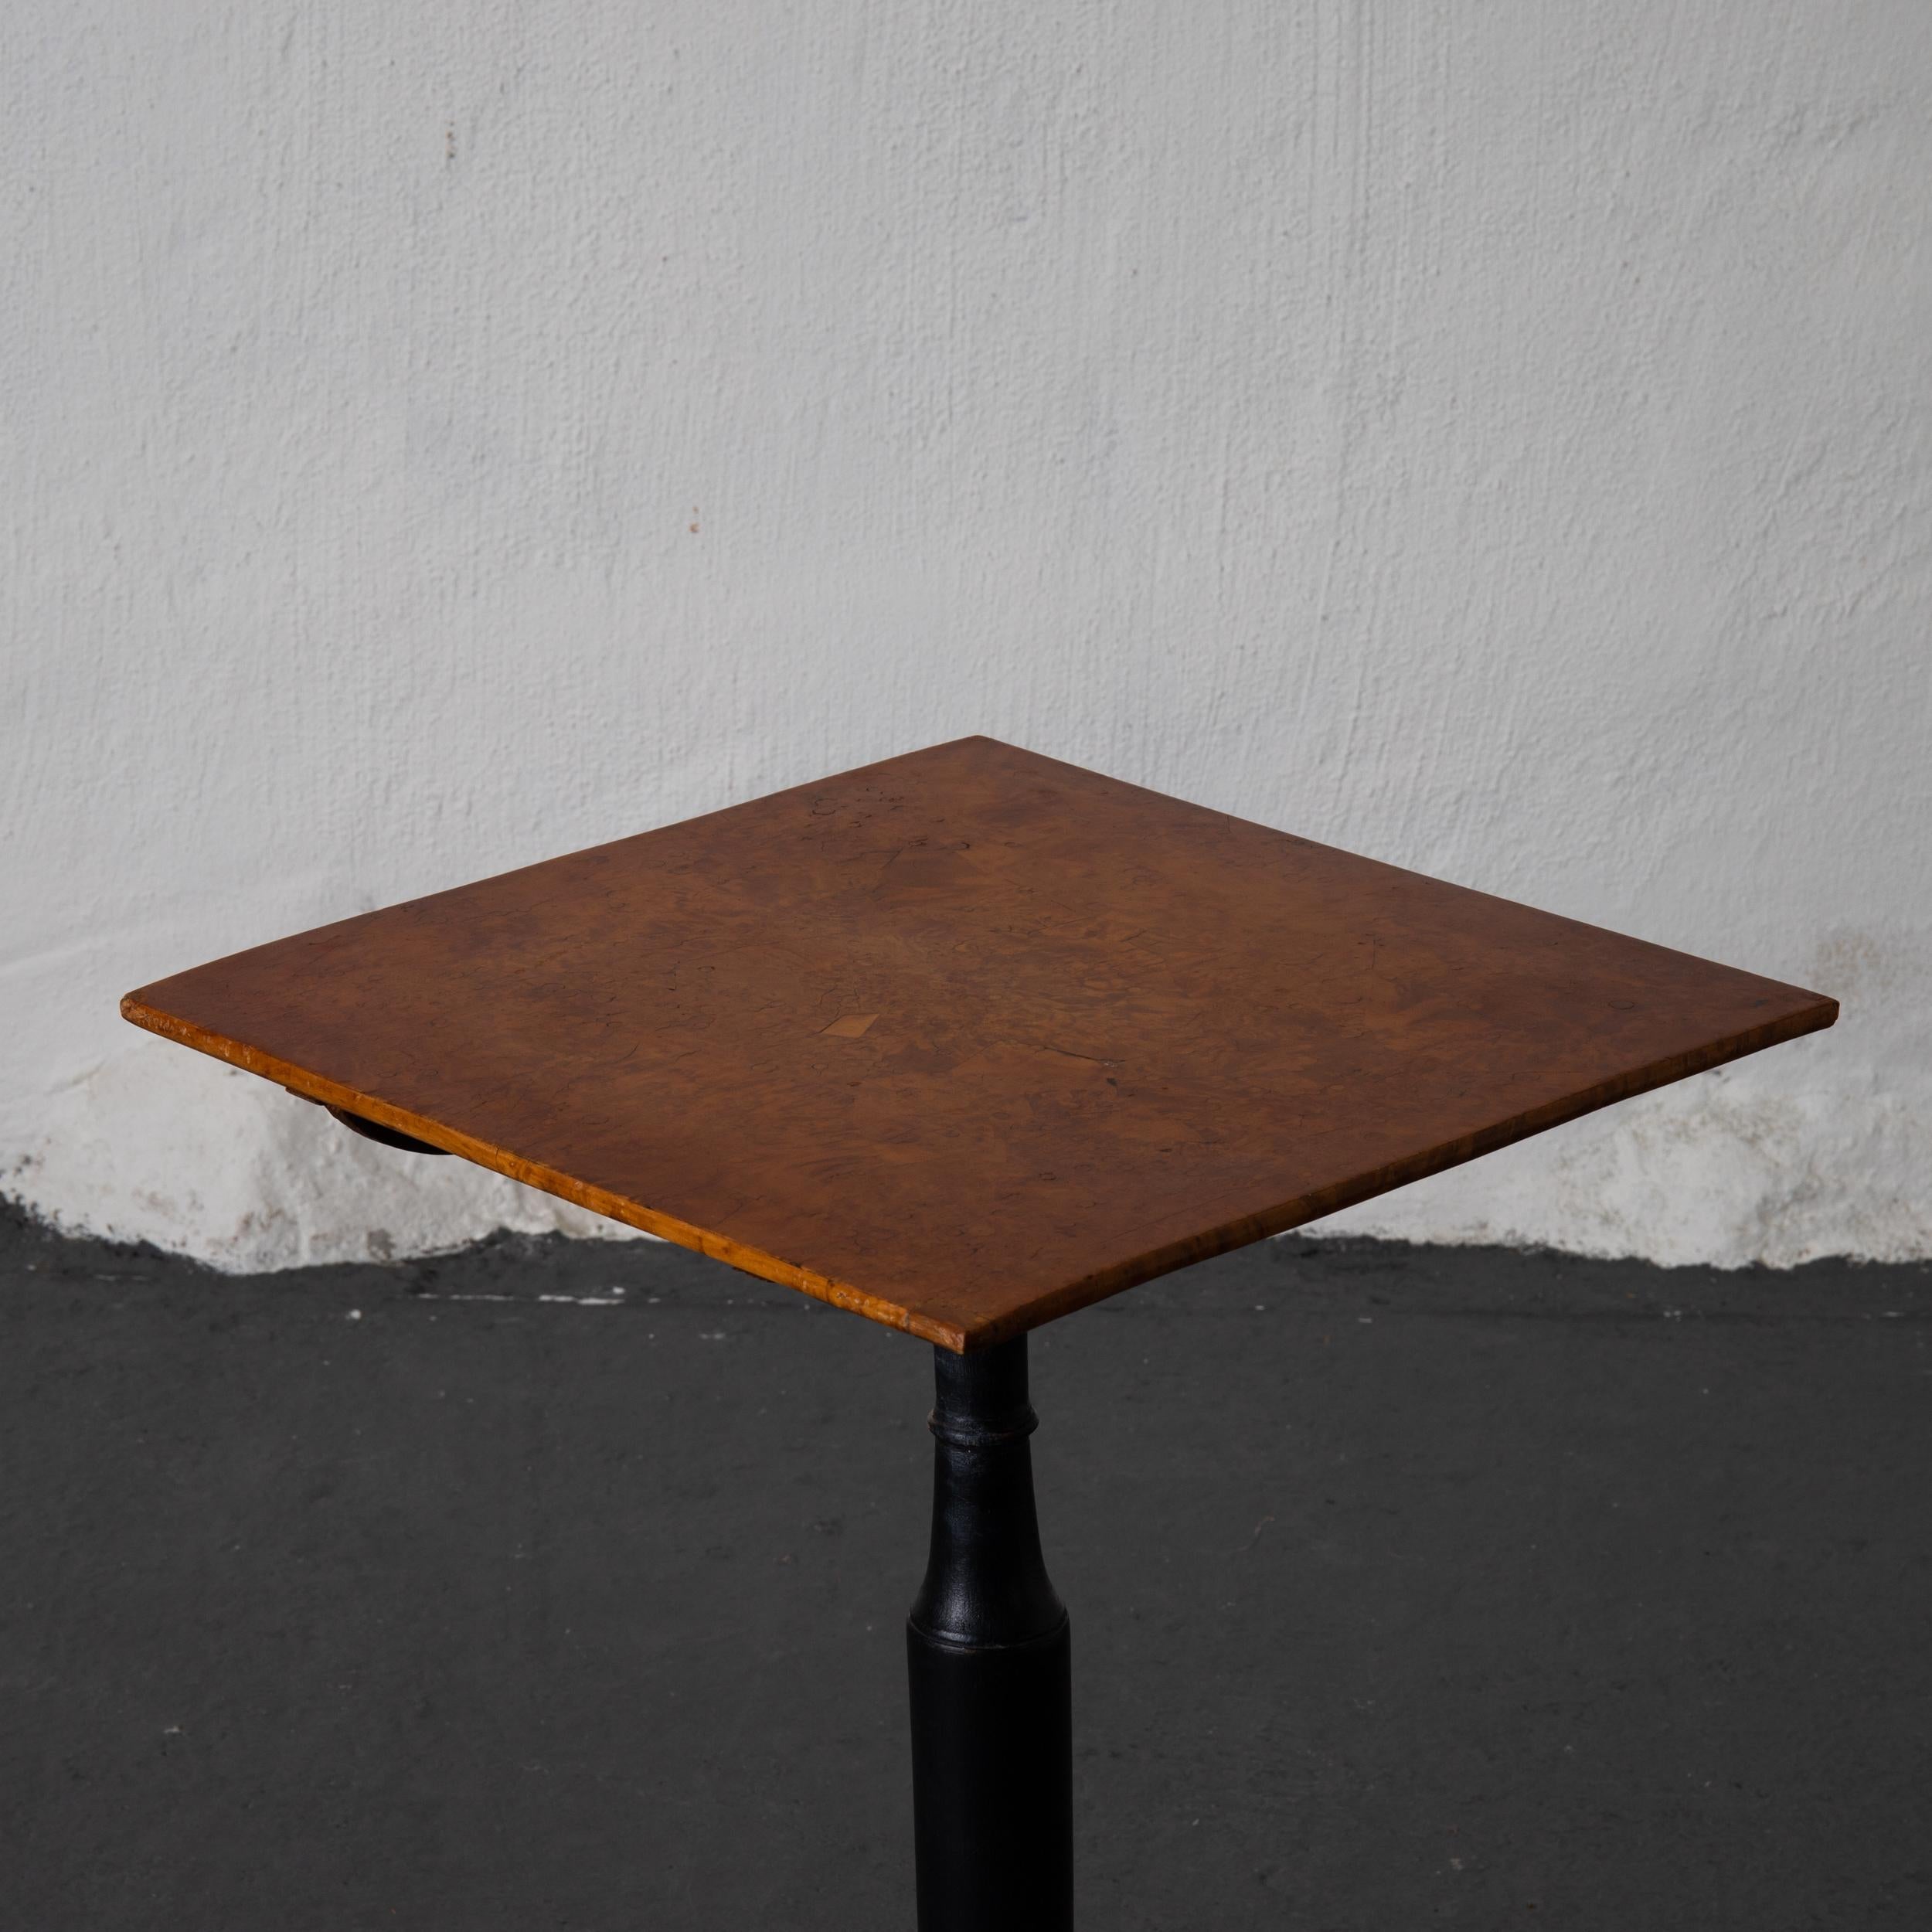 Ein quadratischer Tisch mit kippbarer Platte, der im 18. Jahrhundert in Mälardalen, Schweden, hergestellt wurde. Eine quadratische Platte aus Erlenwurzelfurnier. Steht auf einem Mittelfuß aus geschwärztem Holz auf einem Dreibeinfuß. 

  